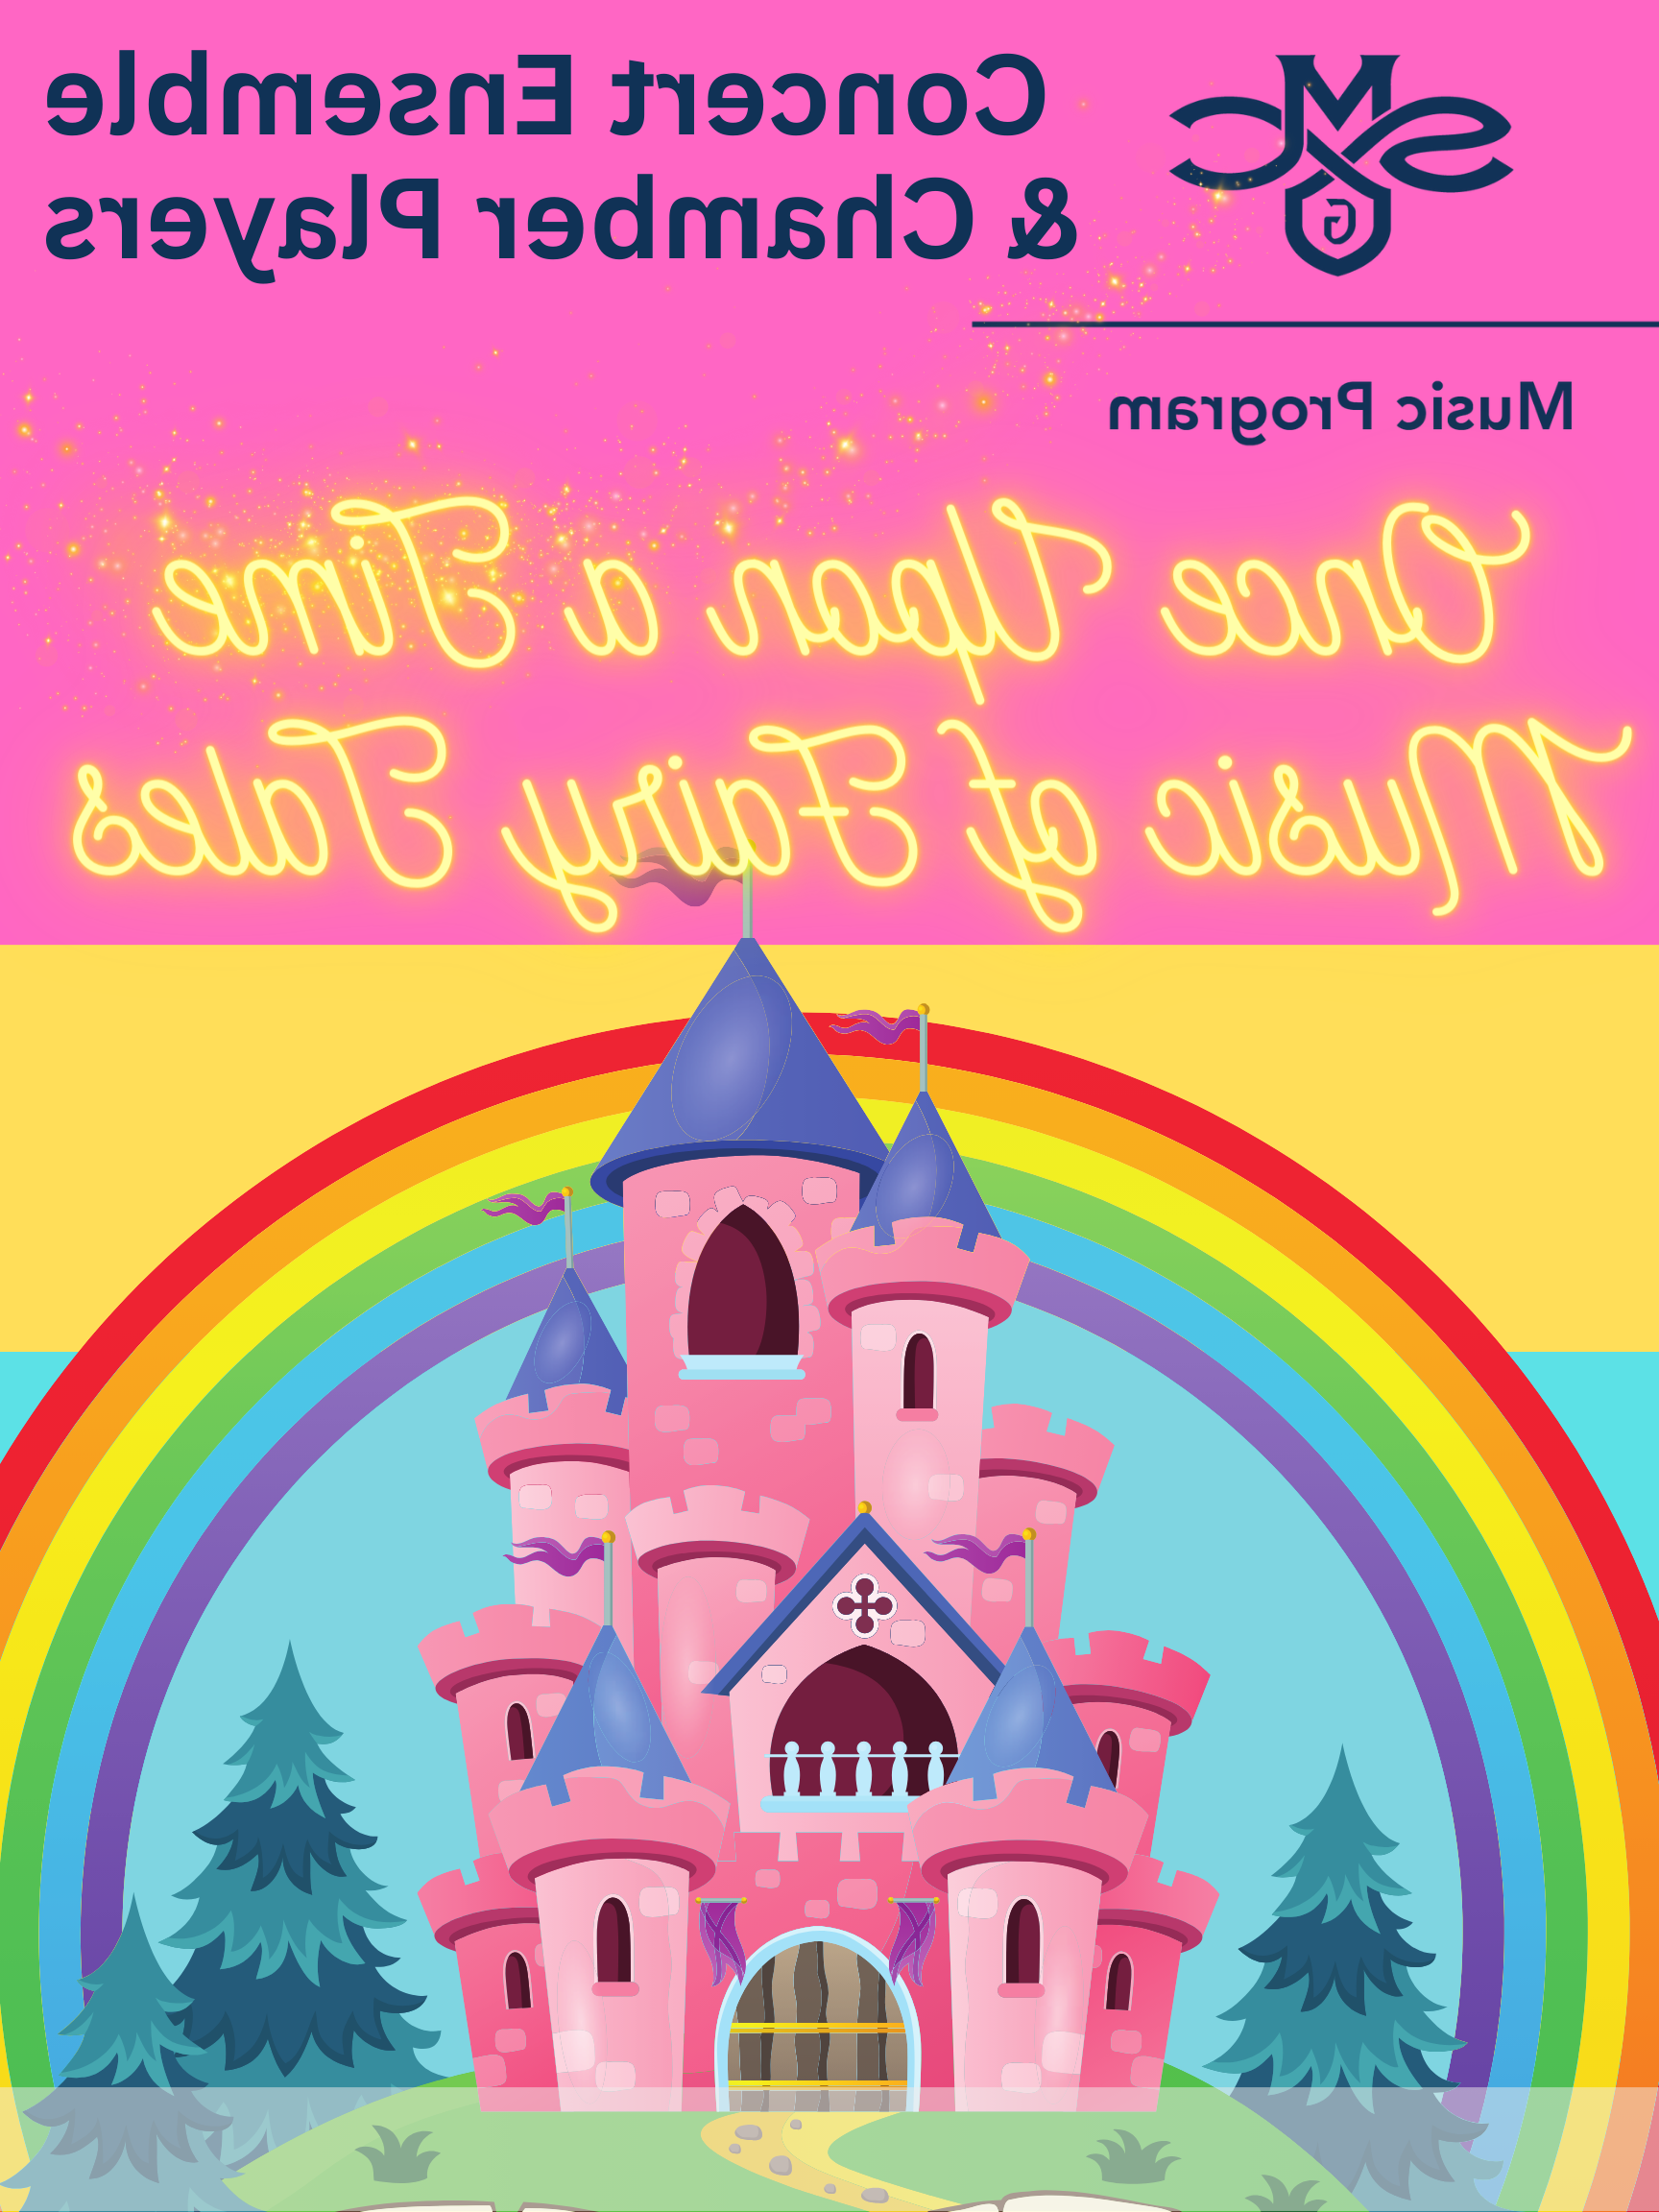 的缩略图 &《童话镇》&quot; Music of Fairy Tales -- a pink poster with a rainbow arching over a cartoon castle